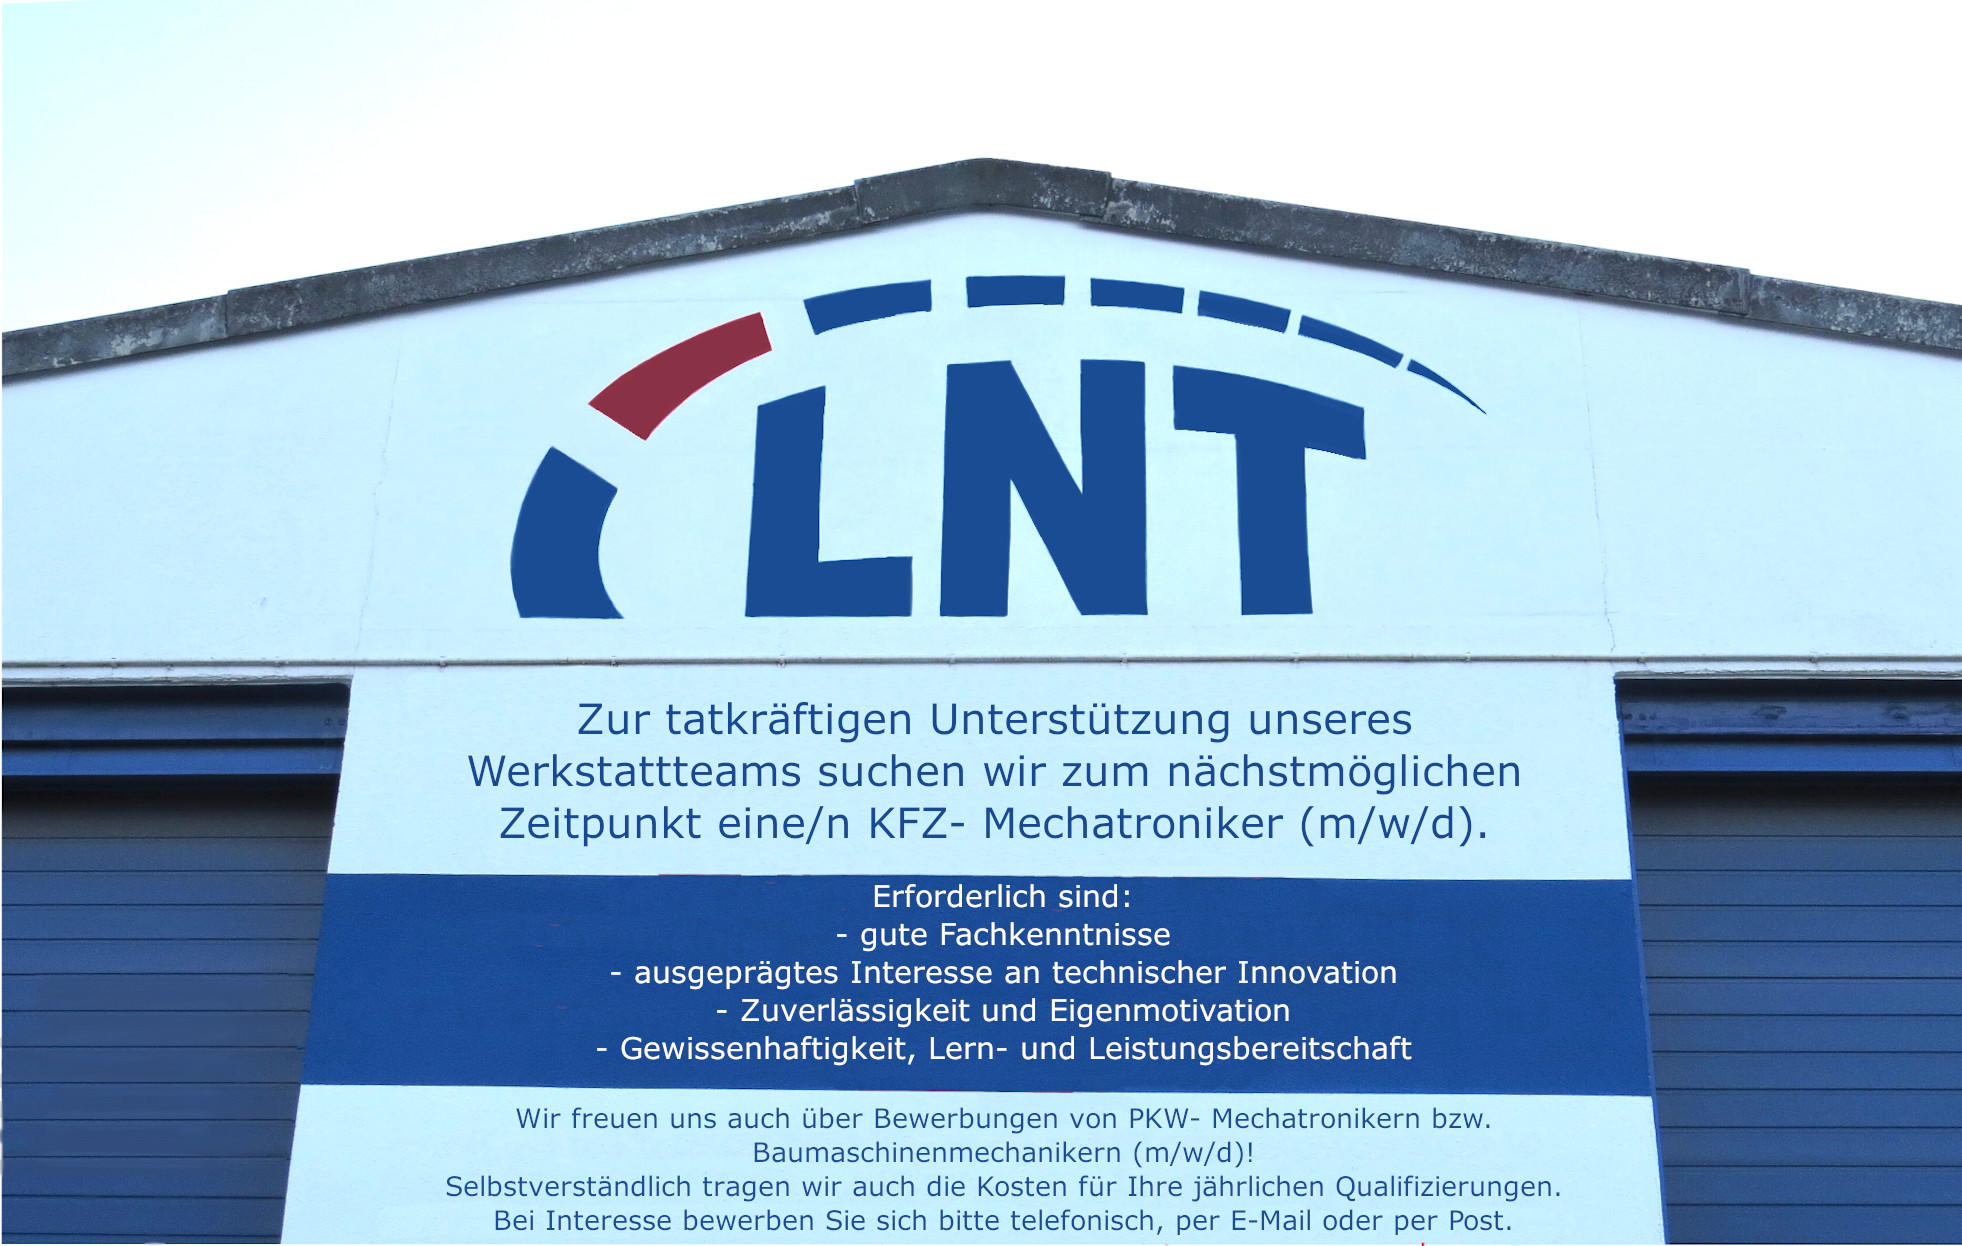 Bild der LNT Lange Nutzfahrzeugtechnik GmbH